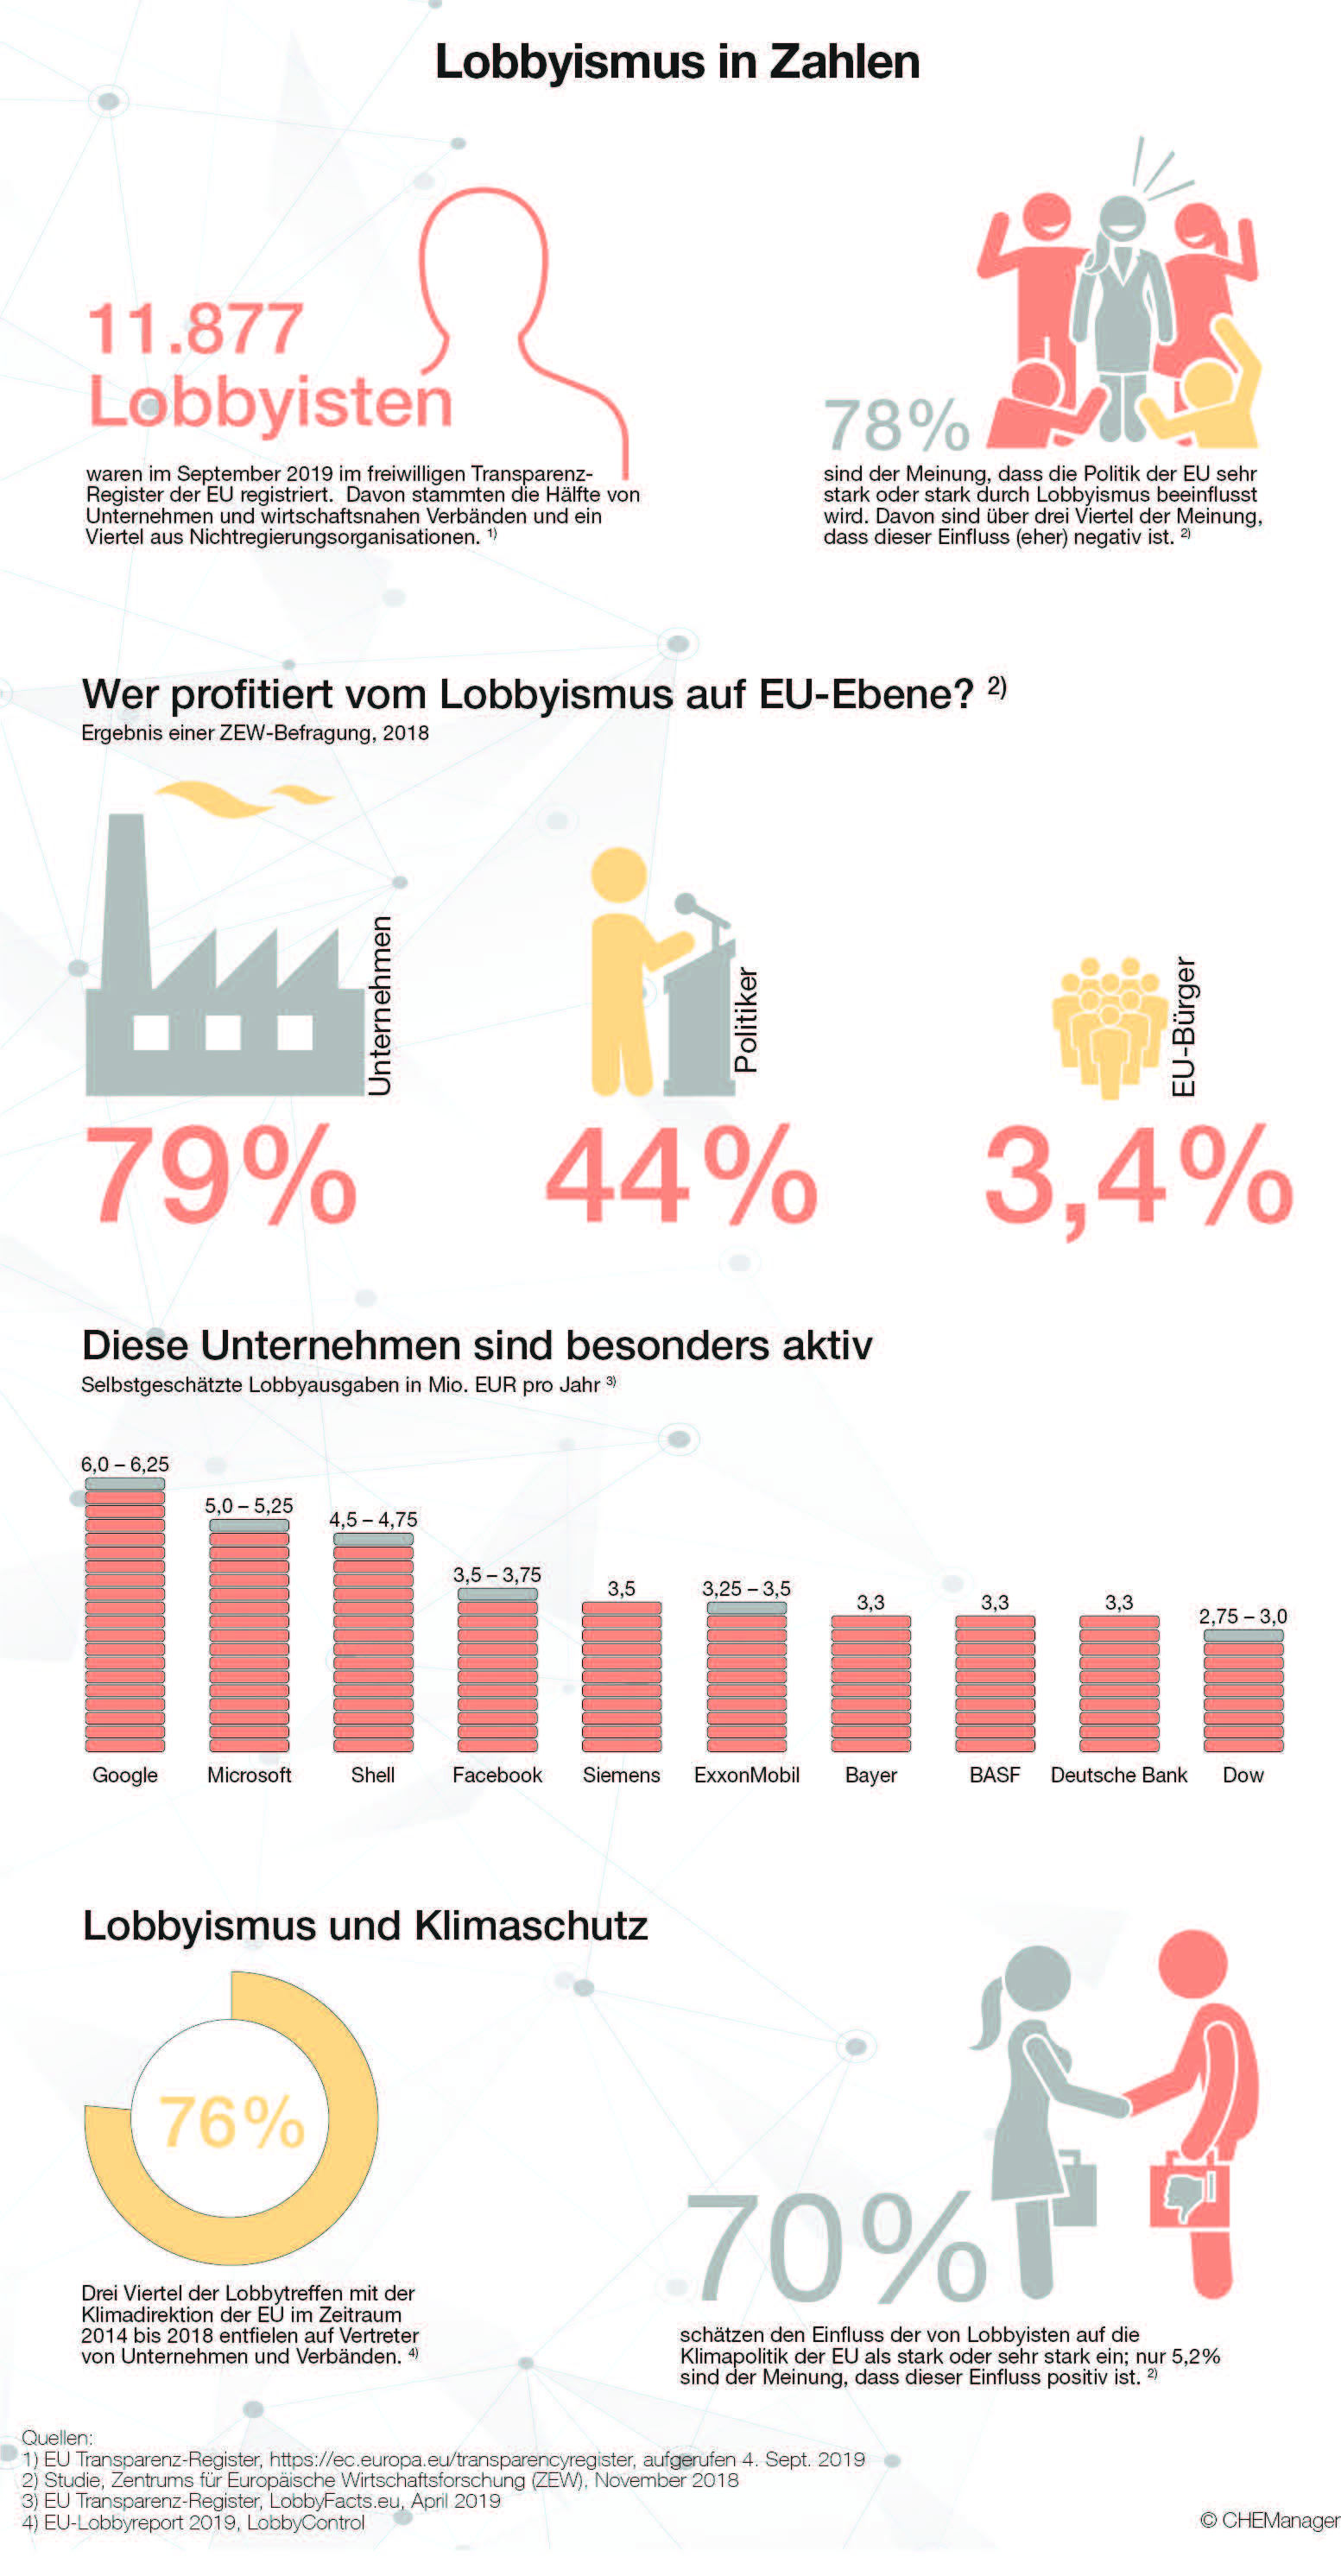 Lobbyismus in Zahlen - CHEManager Grafik 09/2019. © CHEManager